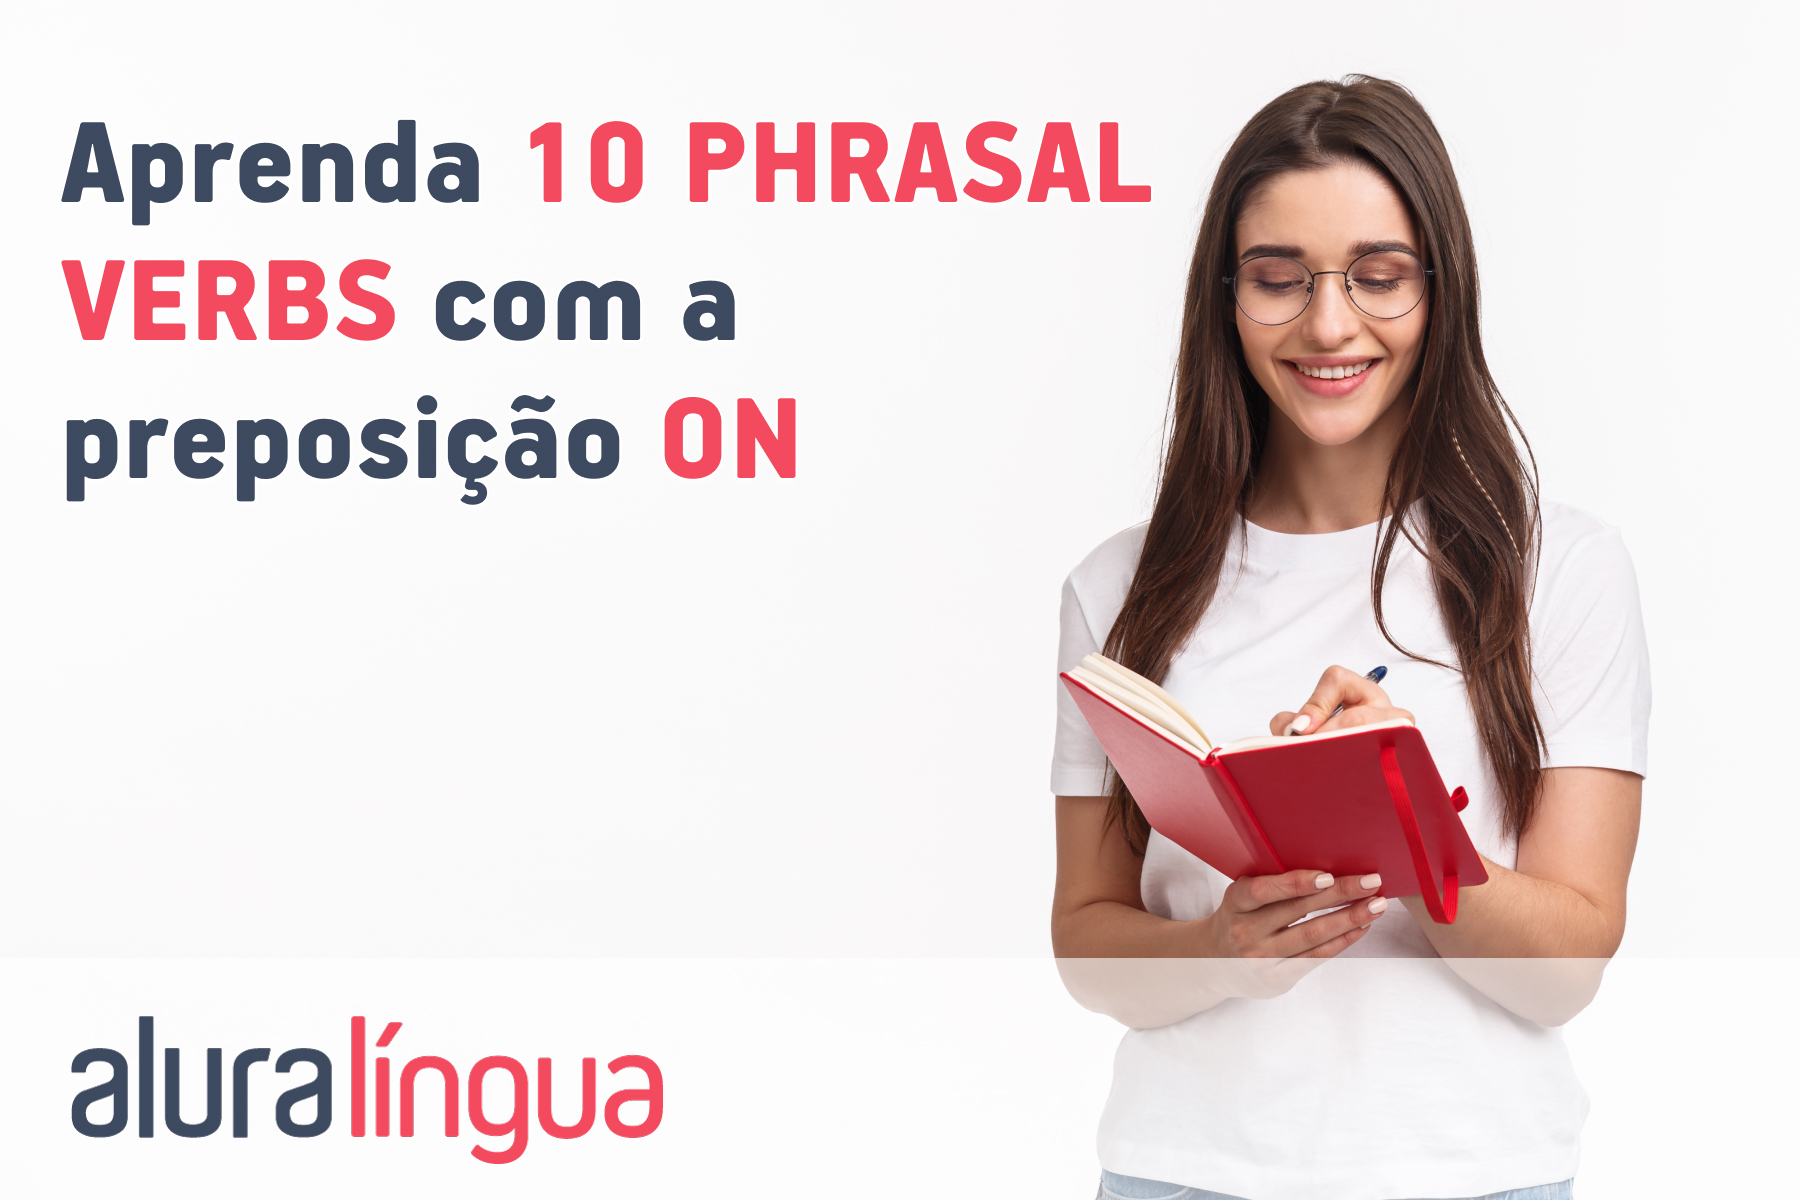 Aprenda 10 phrasal verbs com a preposição ON #inset